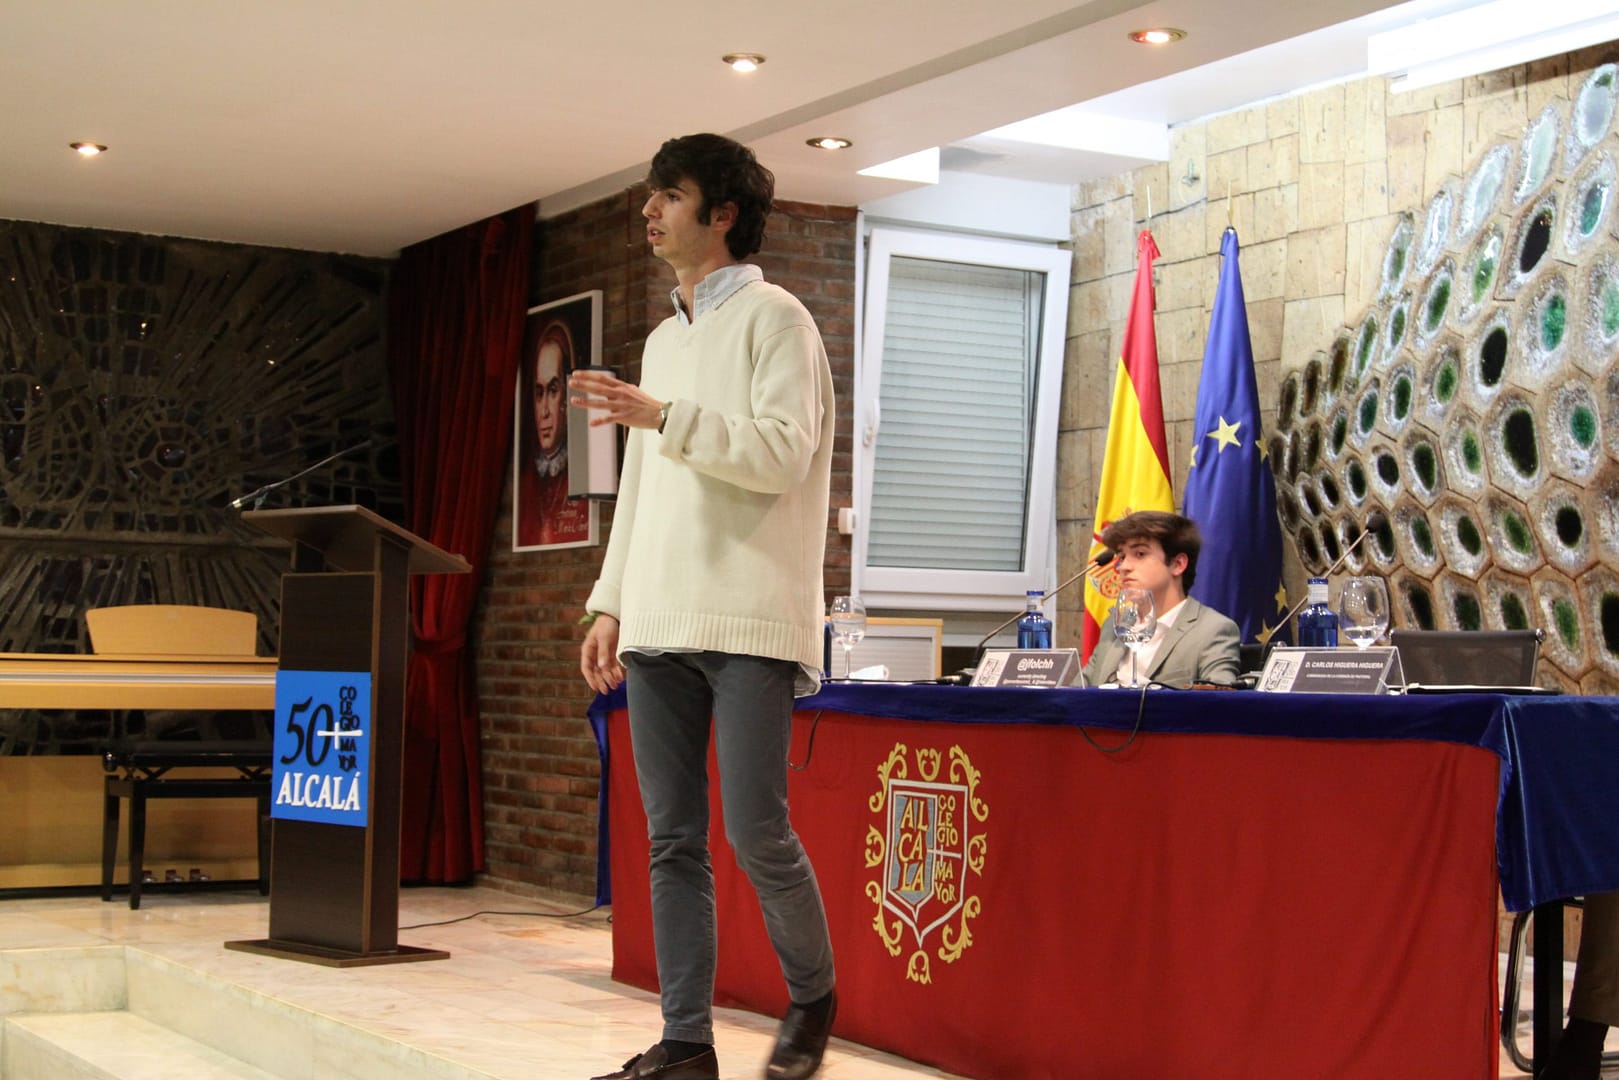 Jfolch dando su testimonio en CM Alcalá